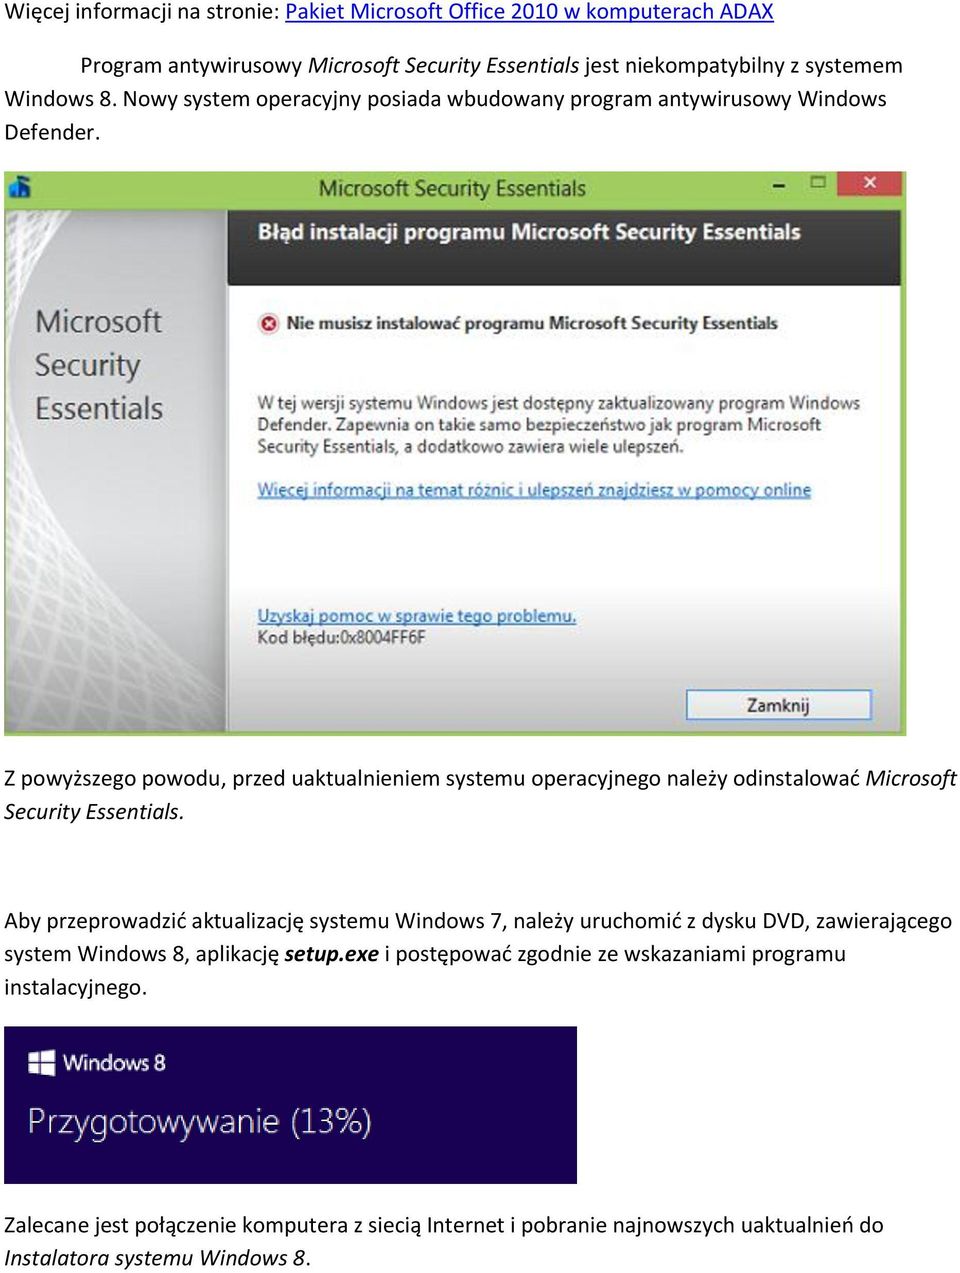 Z powyższego powodu, przed uaktualnieniem systemu operacyjnego należy odinstalować Microsoft Security Essentials.